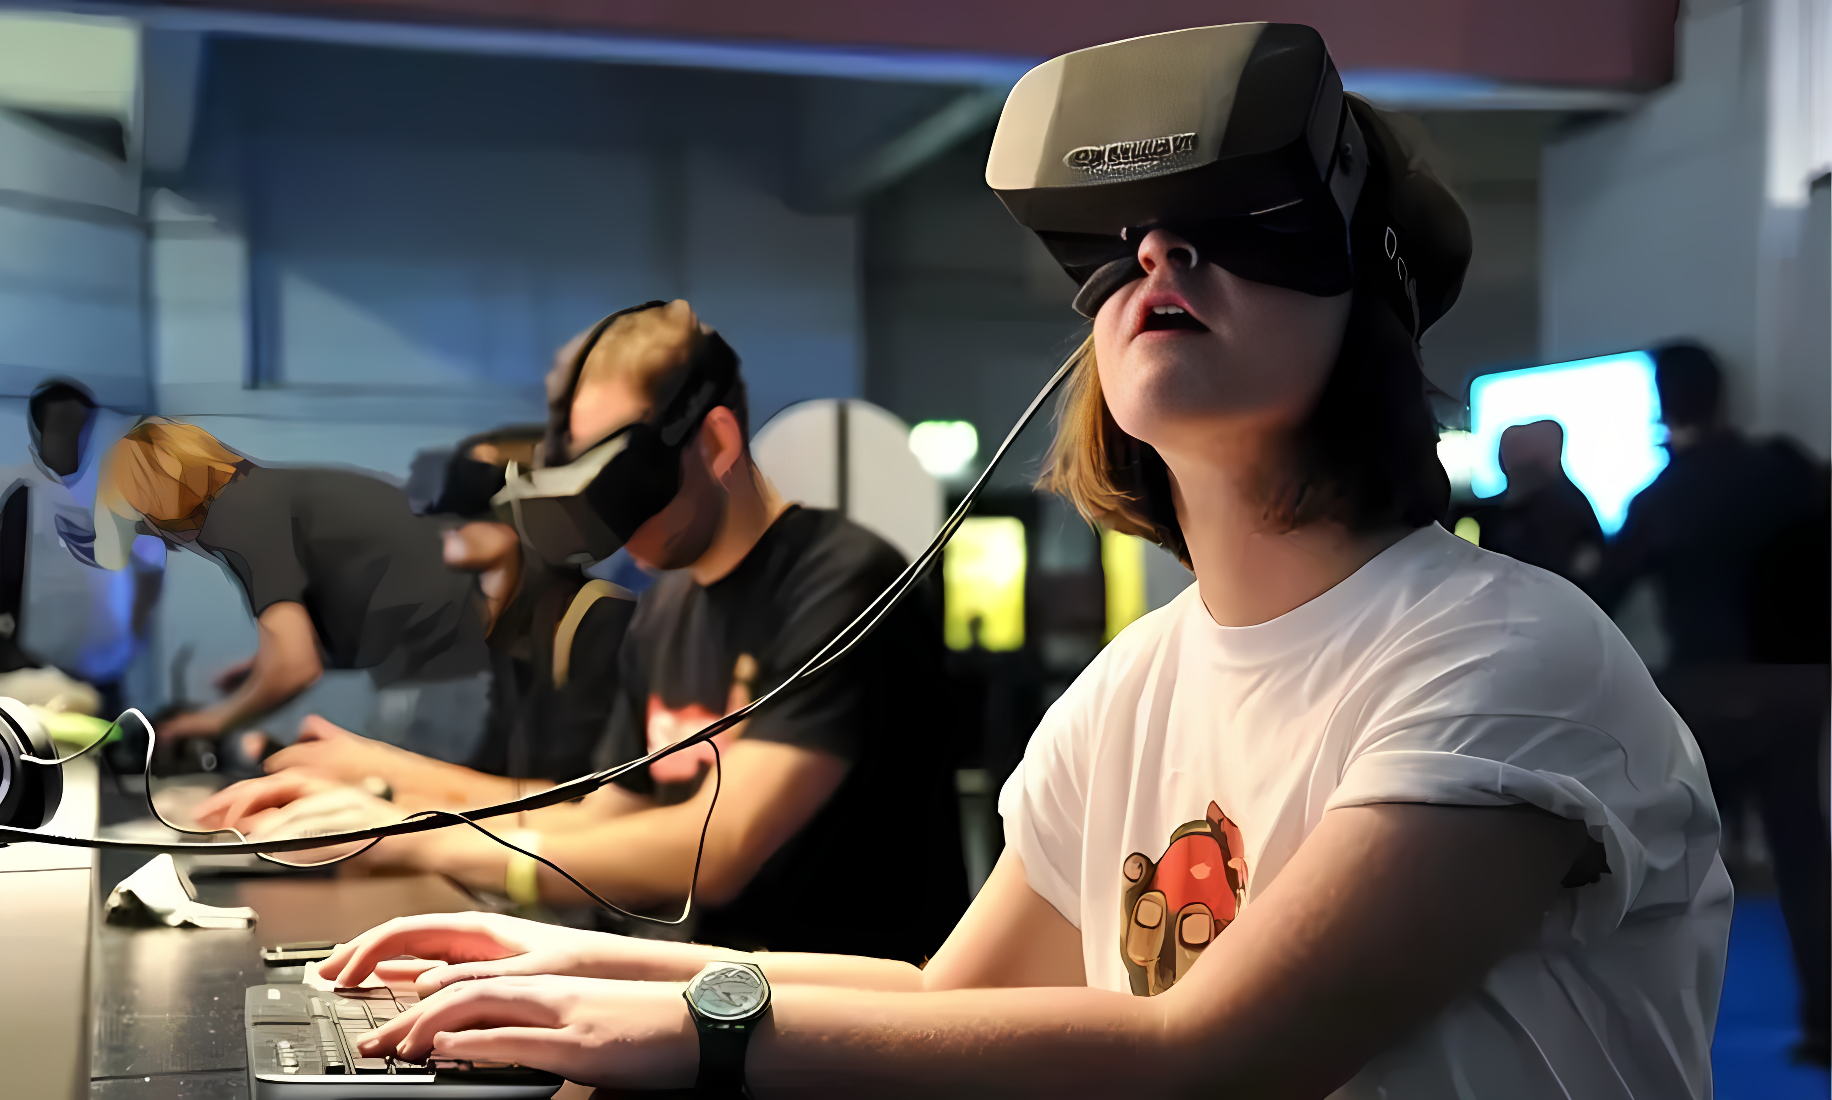 图片展示了几位正在体验虚拟现实（VR）设备的人。他们戴着头戴式显示器，专注于前方的虚拟世界，身边有电脑设备。